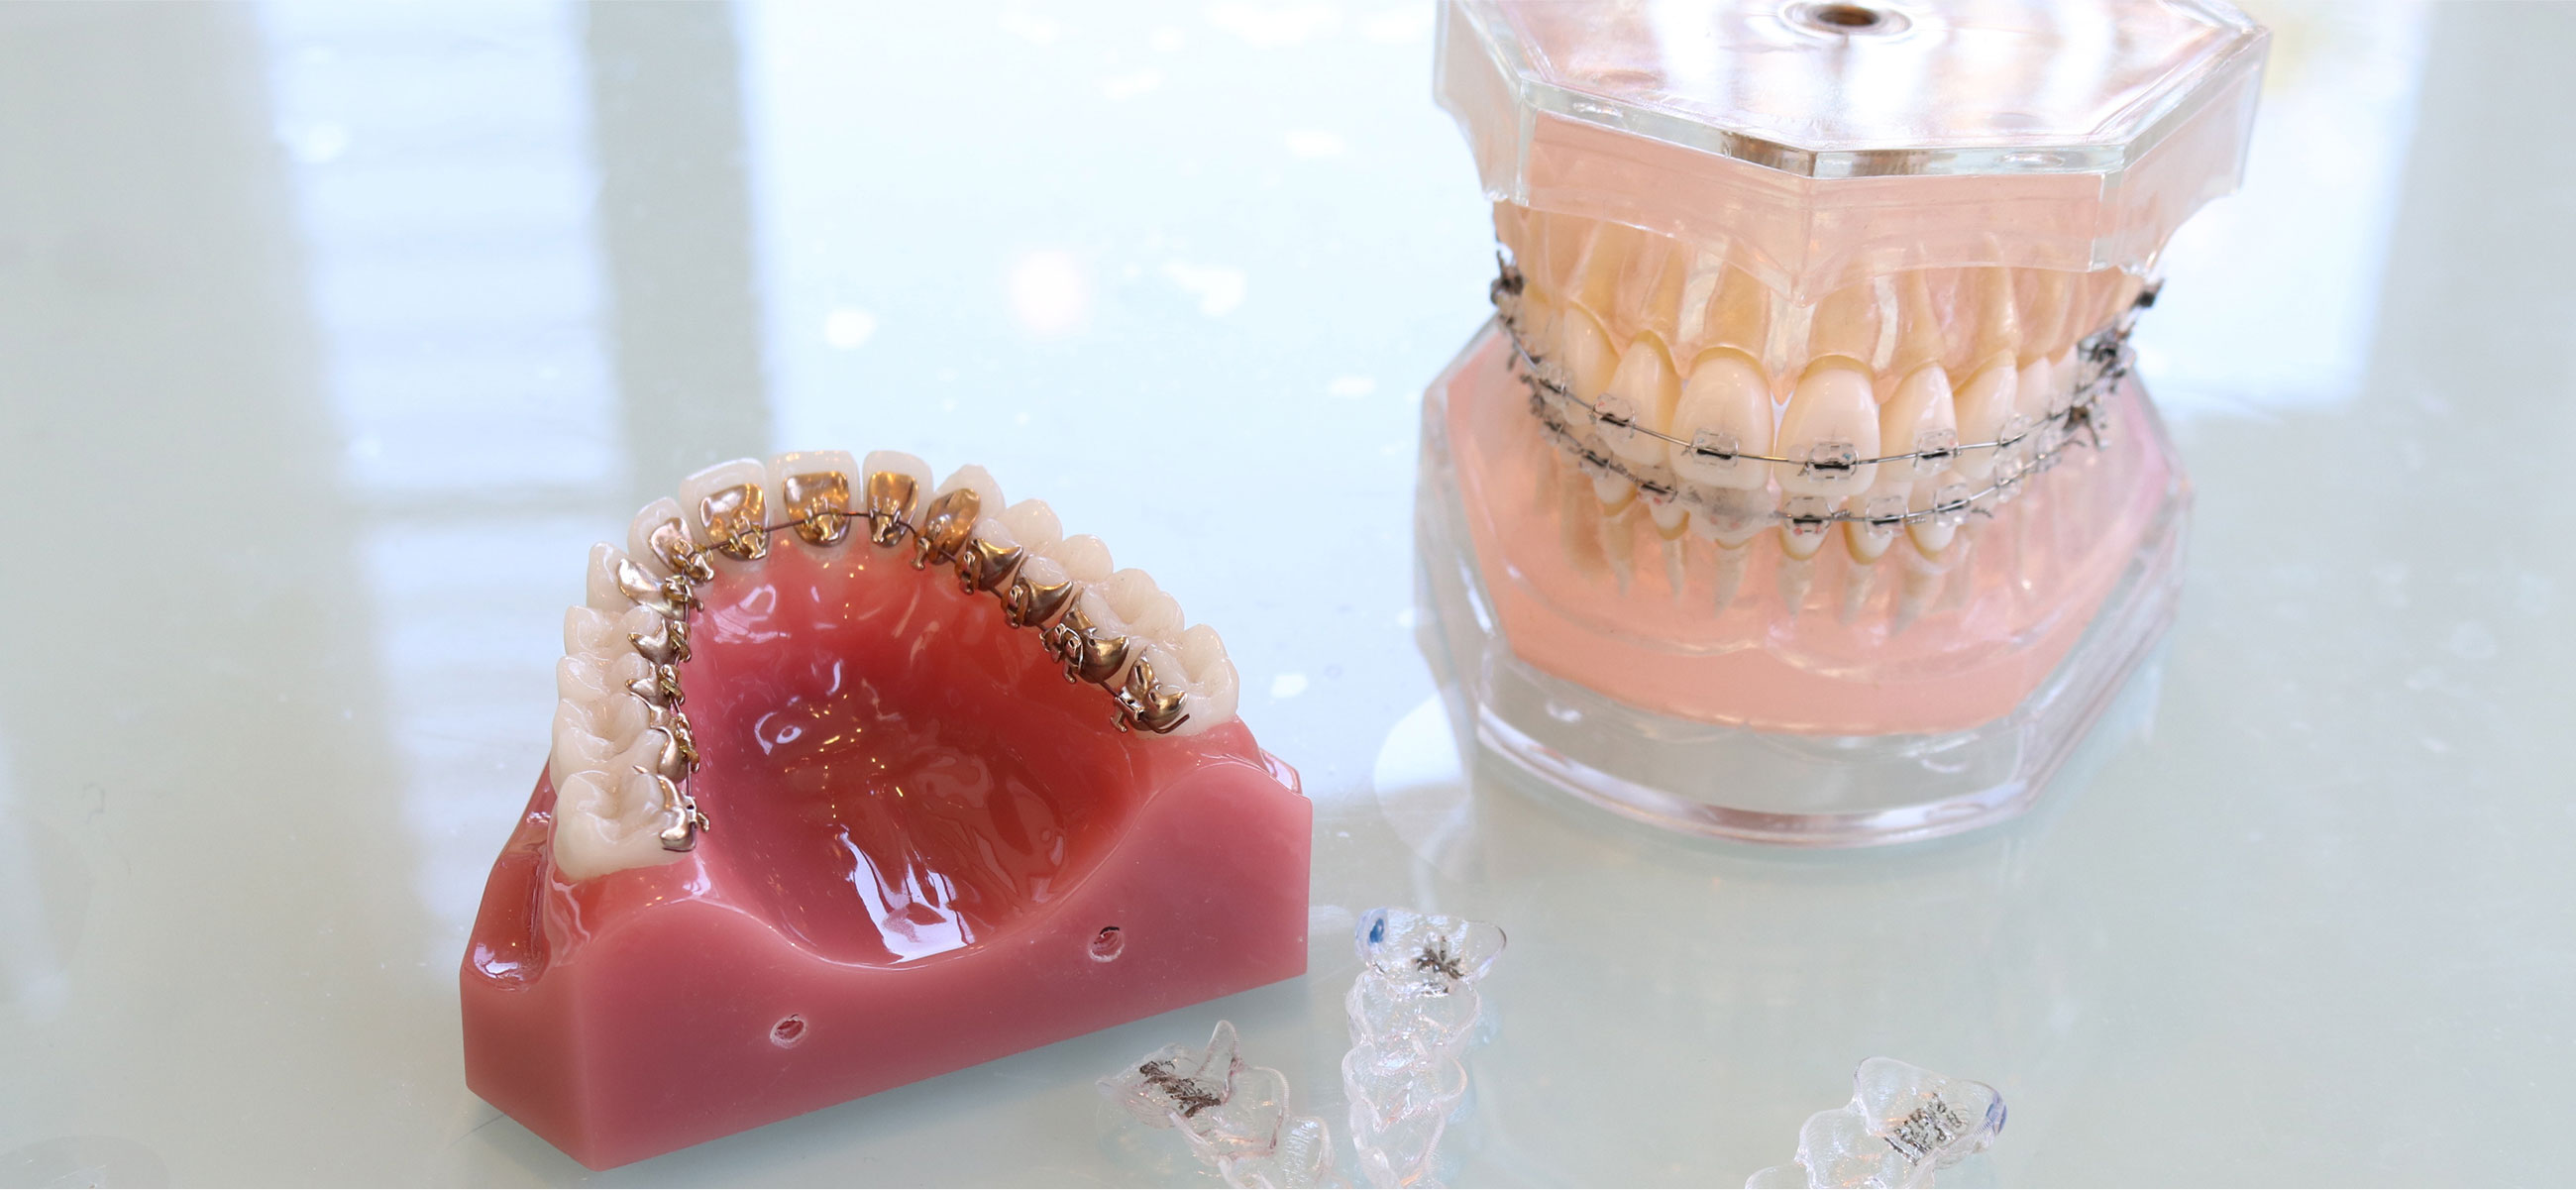 矯正歯科ならではの多様な矯正装置